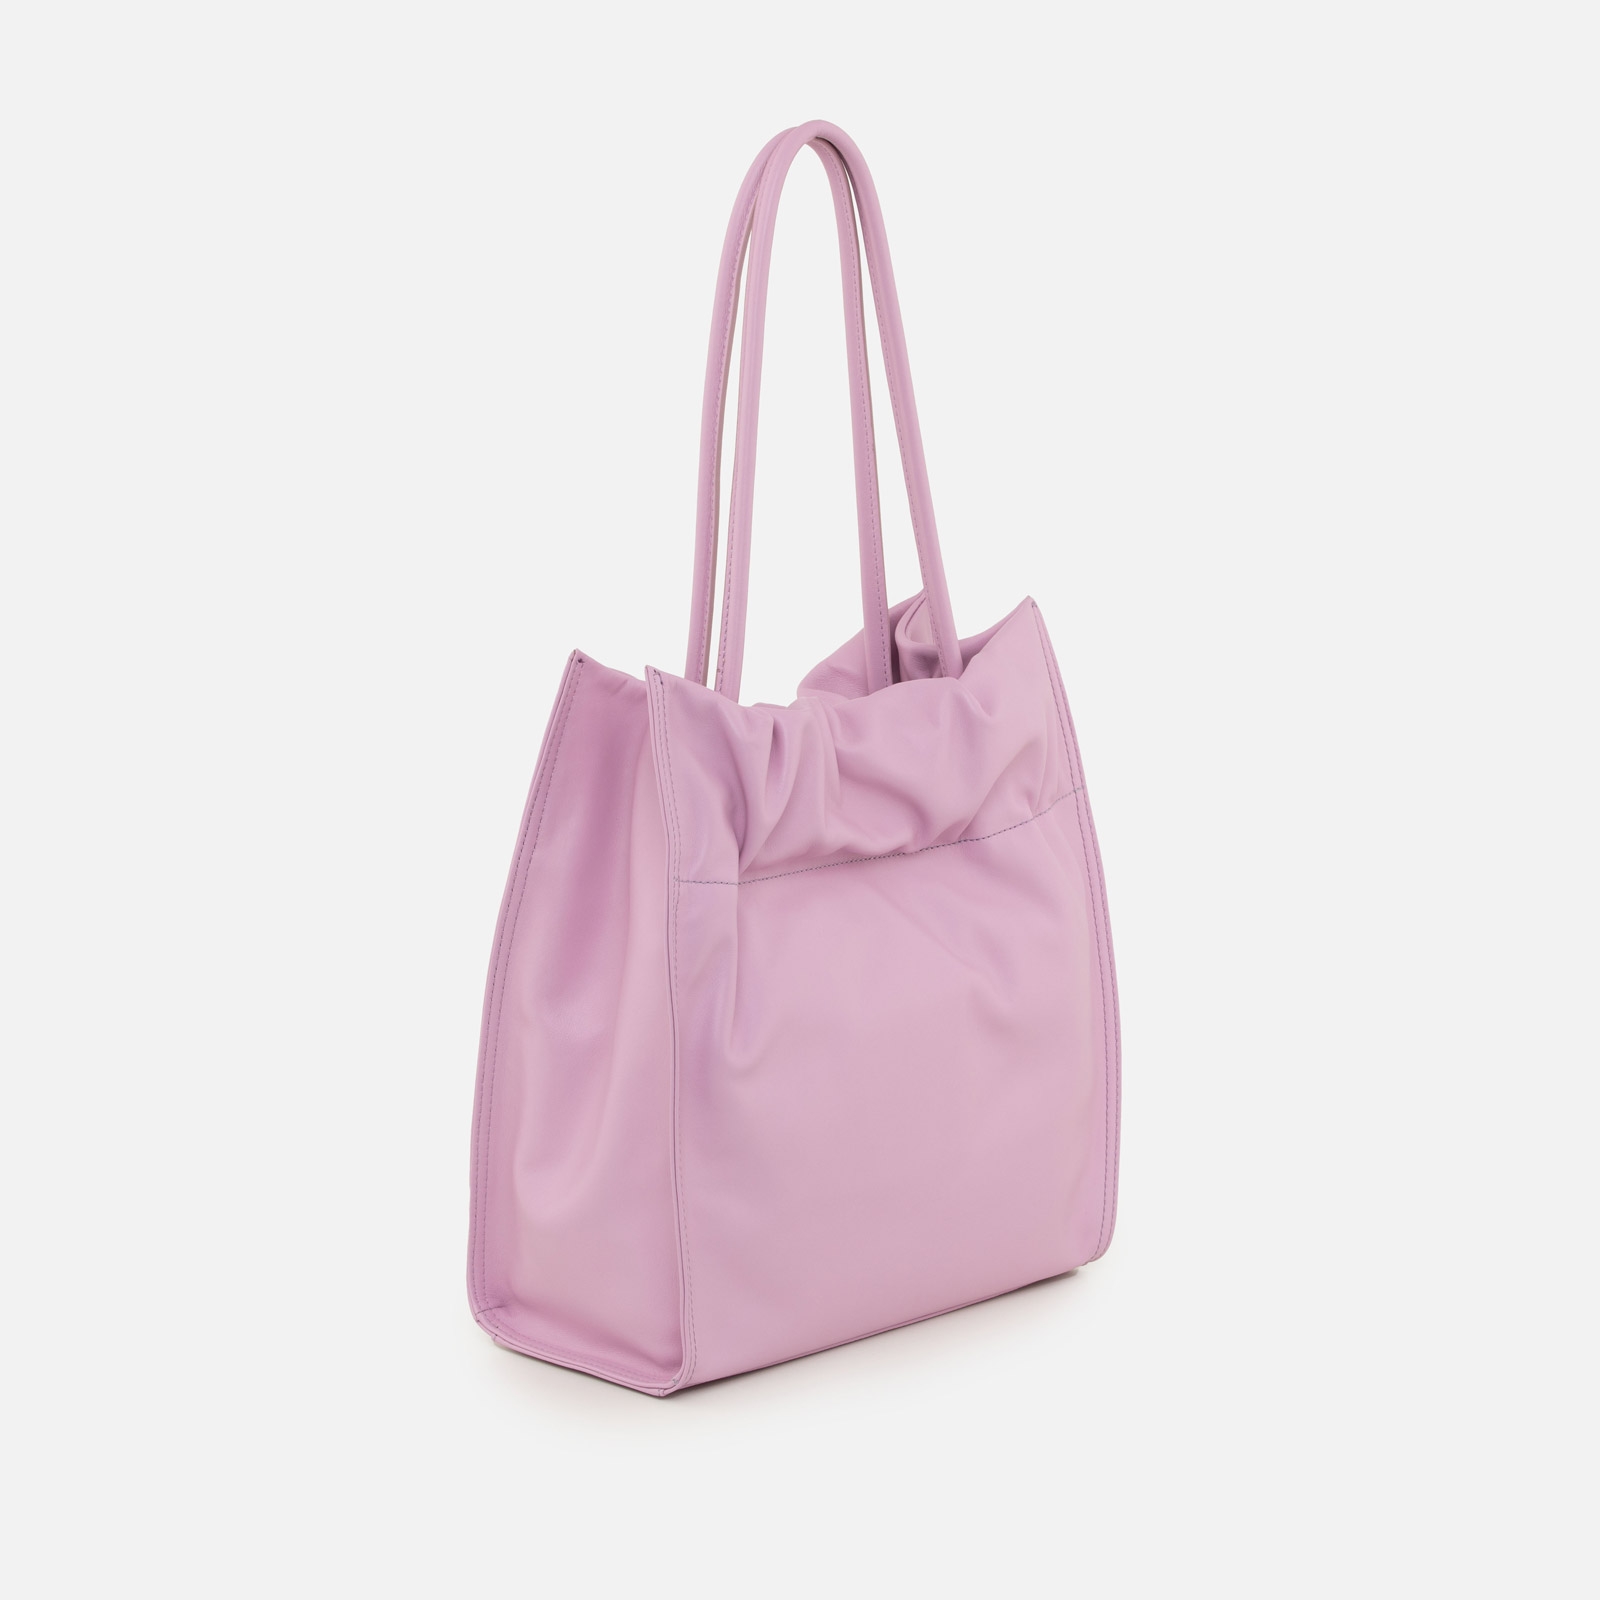 Naos Large Tote | Arcadia Handbags